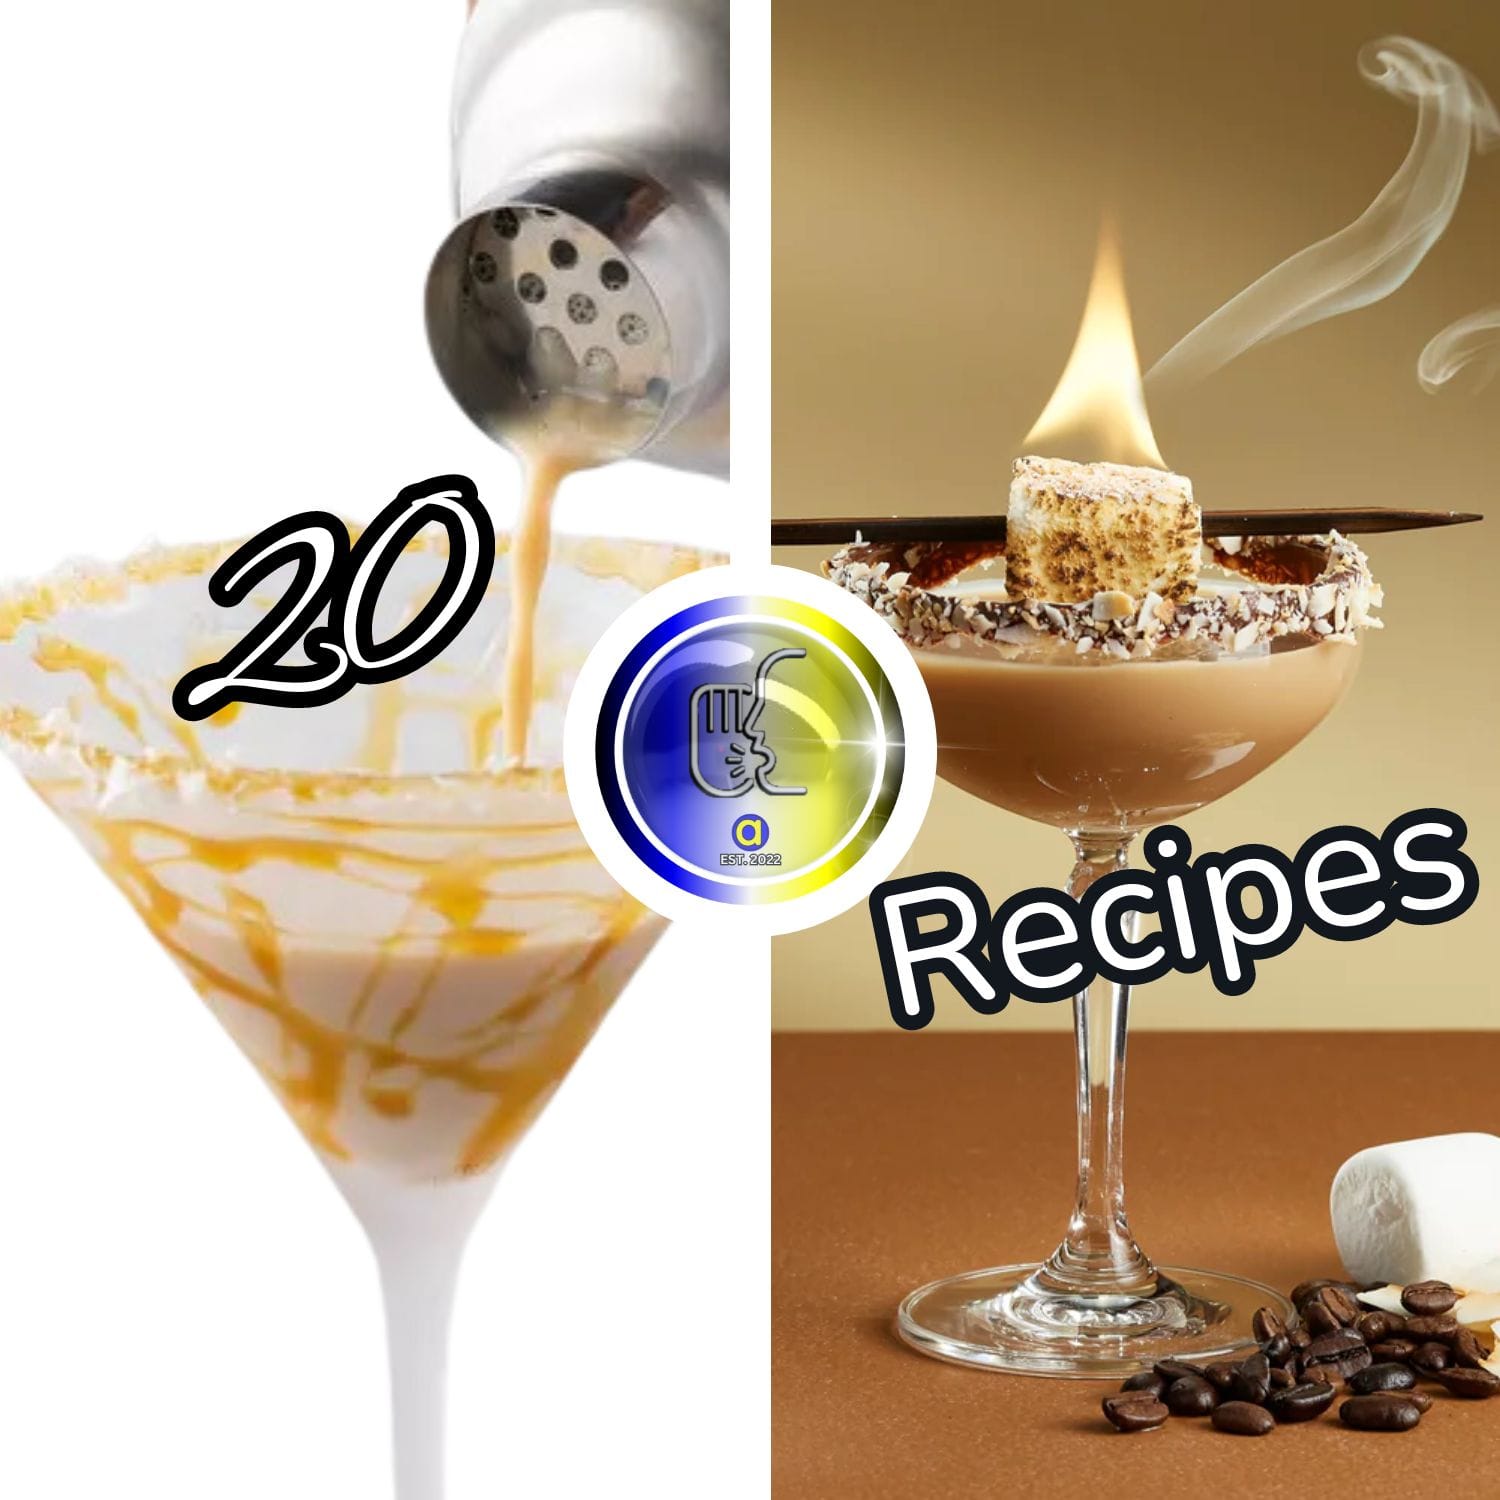 Classic Frothy to Rich Creamy Espresso Martini Recipes